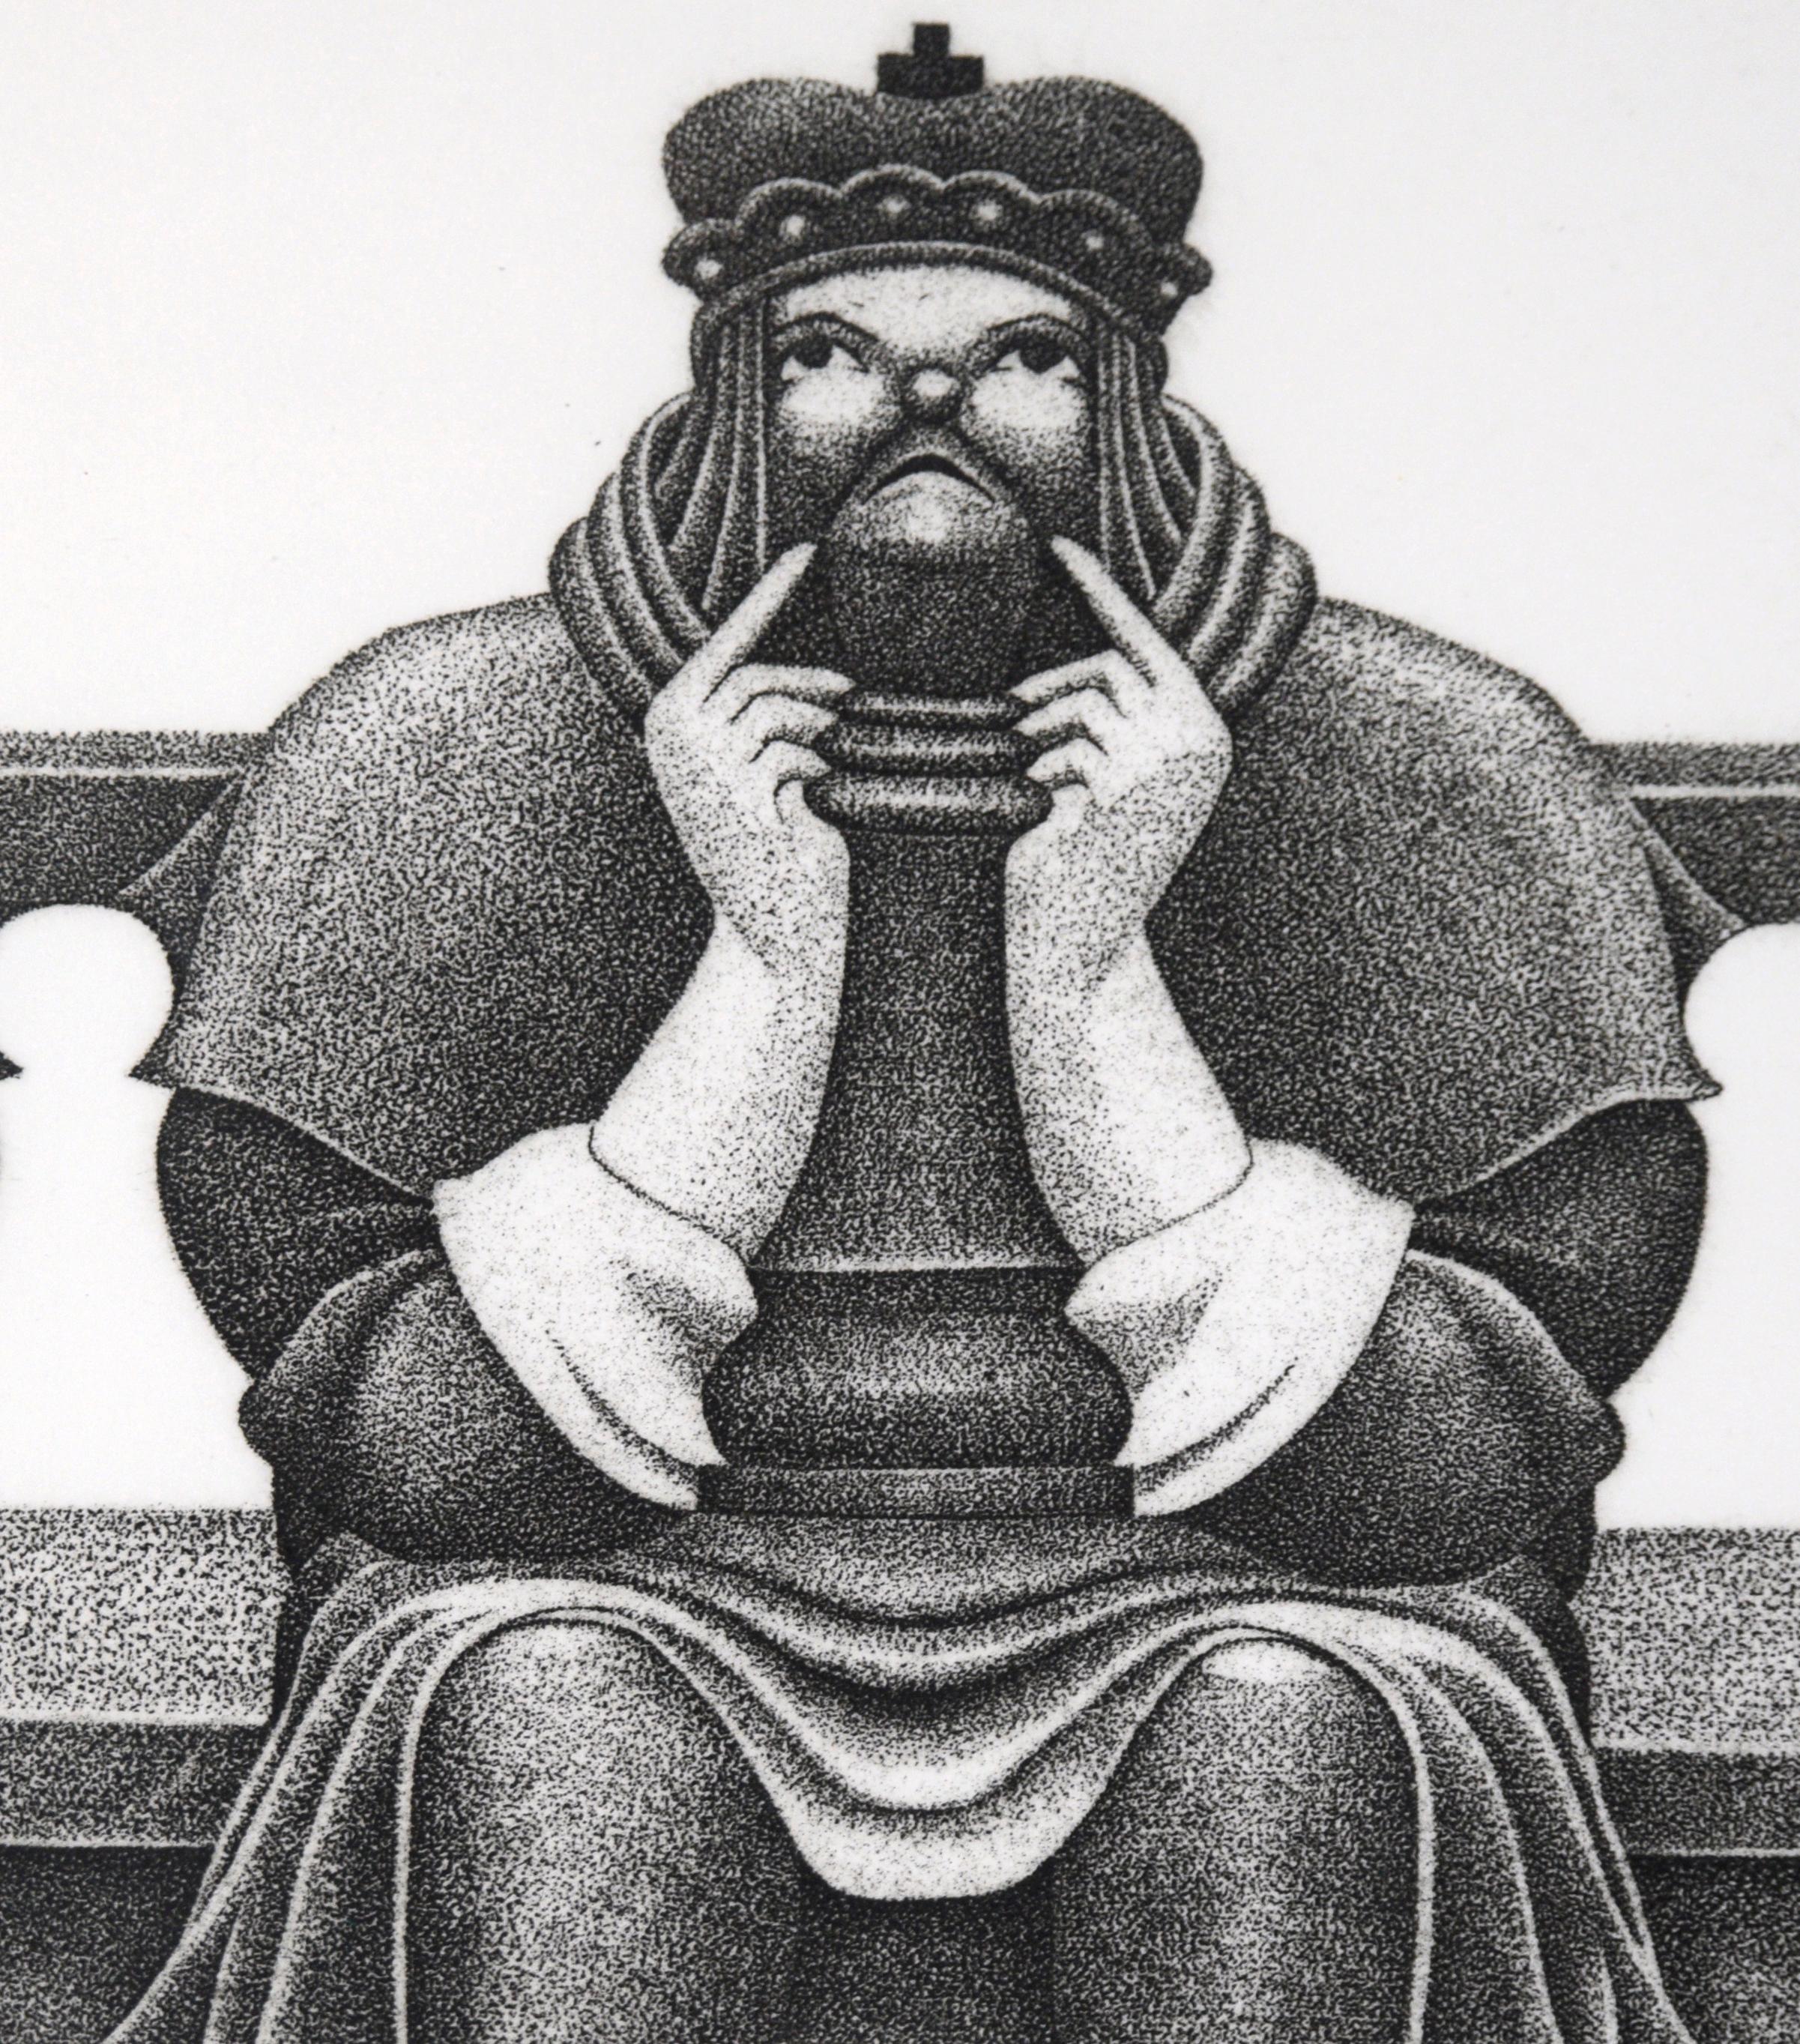 Pointillistische Lithographie „King Pin“ in Tinte auf Papier

Detaillierte Lithografie eines Königs auf einer Bank von E.B. Rothewell (Amerikaner, 1926-2011). Ein stilisiertes Porträt eines Königs, der auf einer großen Bank sitzt. Er blickt nach